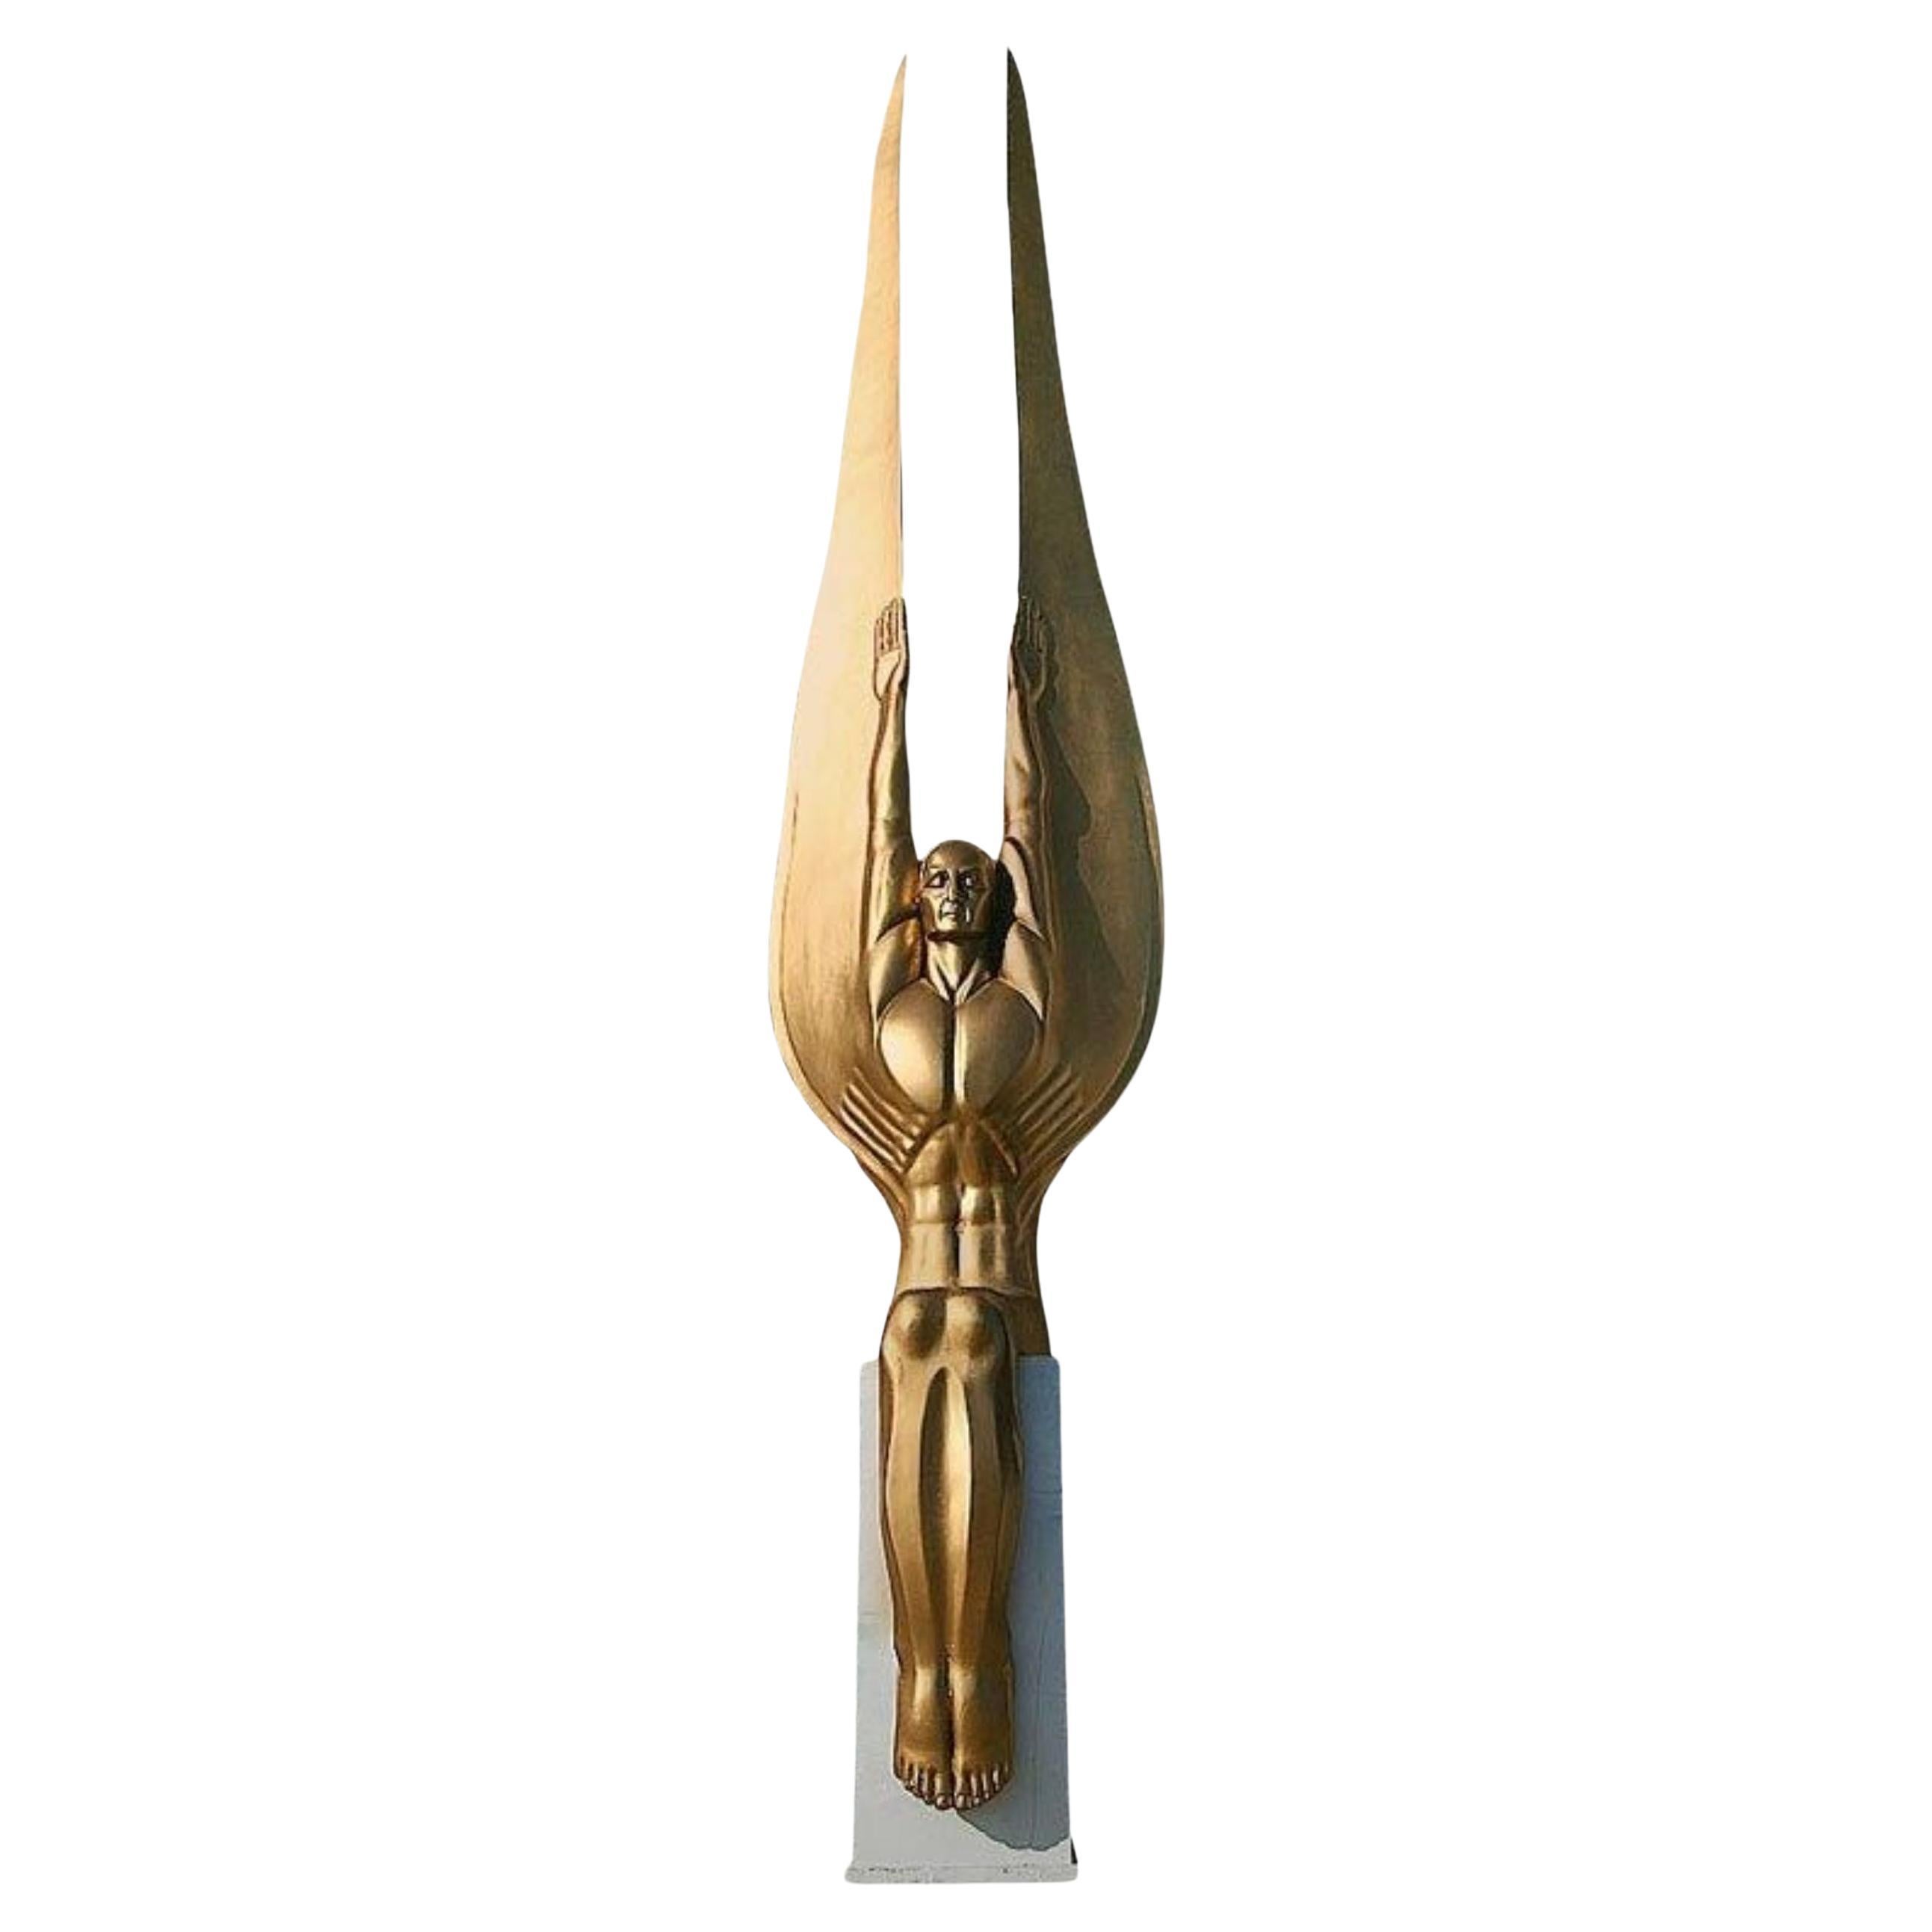 Art Deco Style Angel Sculpture "Wings of the Republic" by Oskar J.W. Hansen